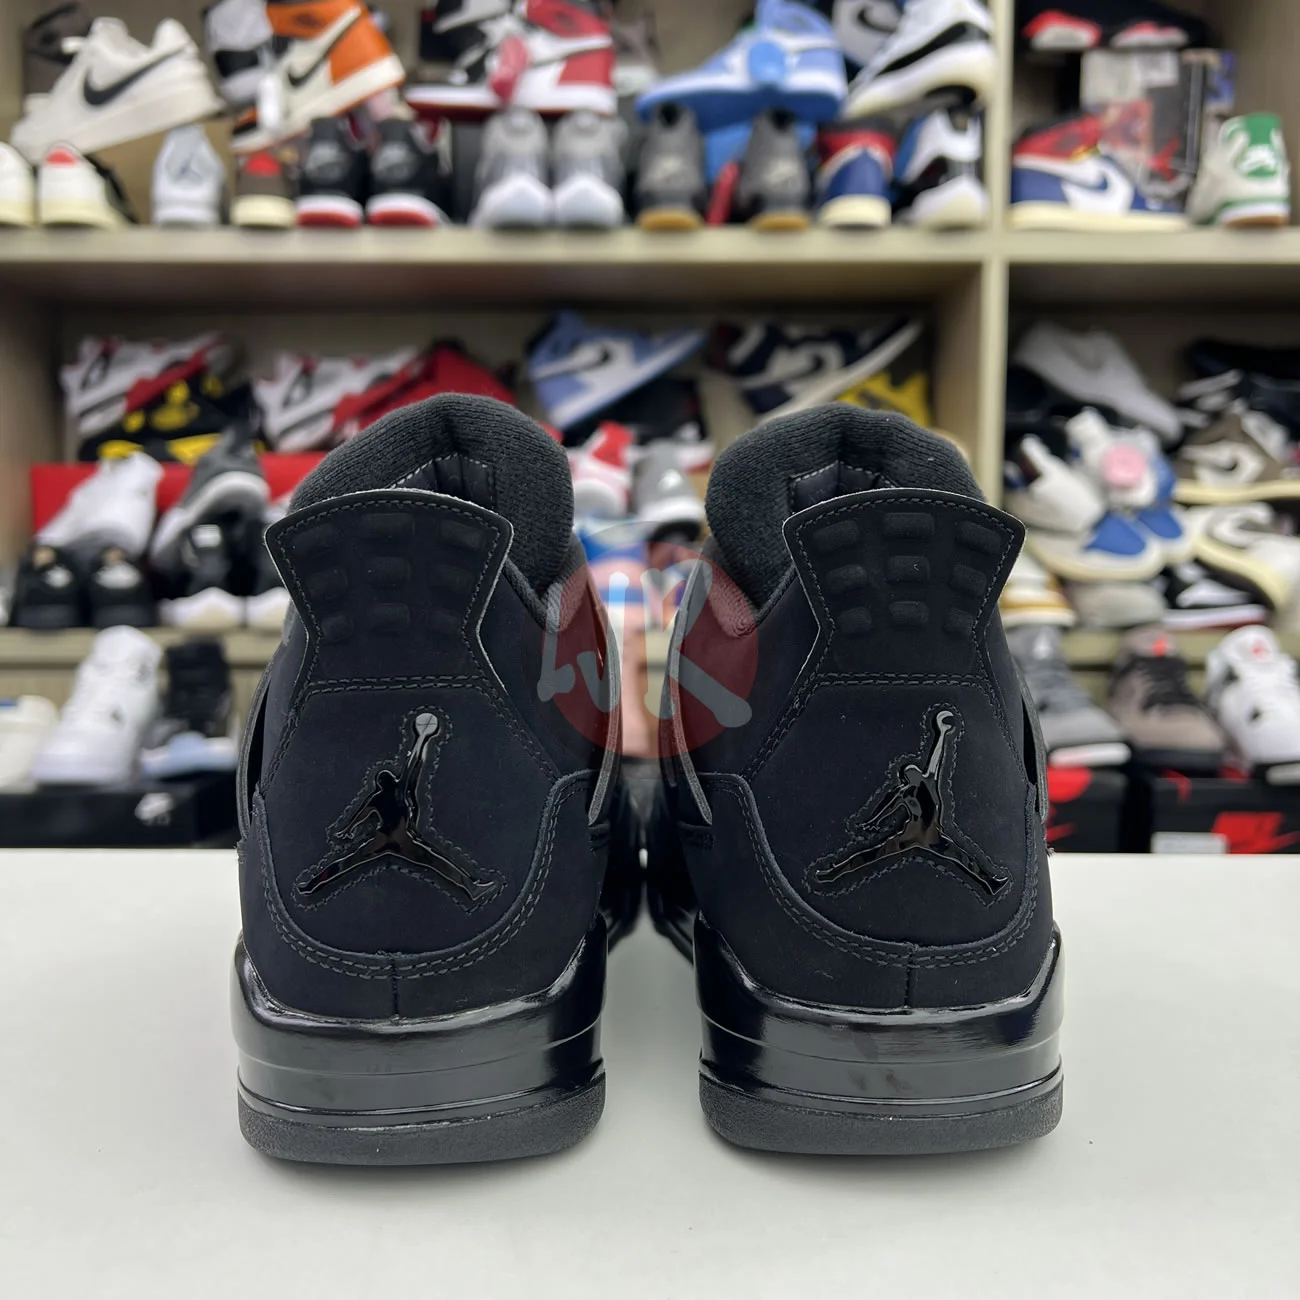 Air Jordan 4 Retro Black Cat 2020 Cu1110 010 Ljr Sneakers (21) - bc-ljr.com